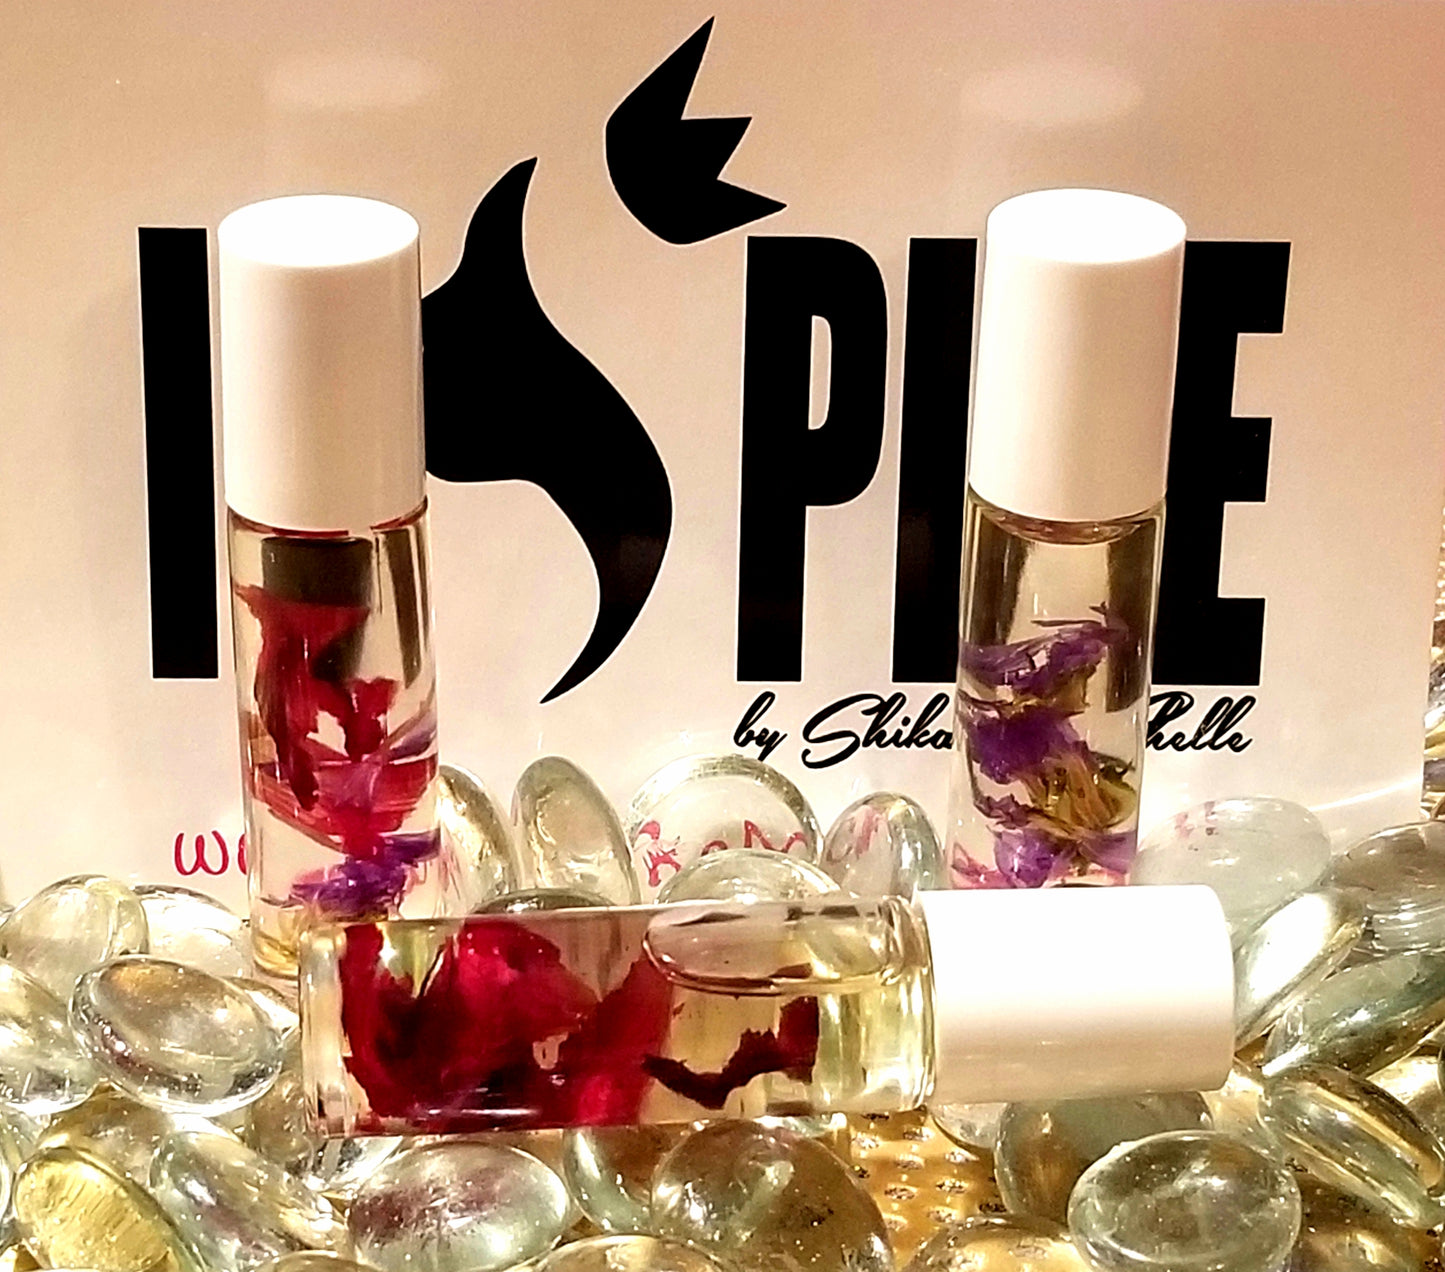 Lilac Perfume Roll-On – Urban ReLeaf